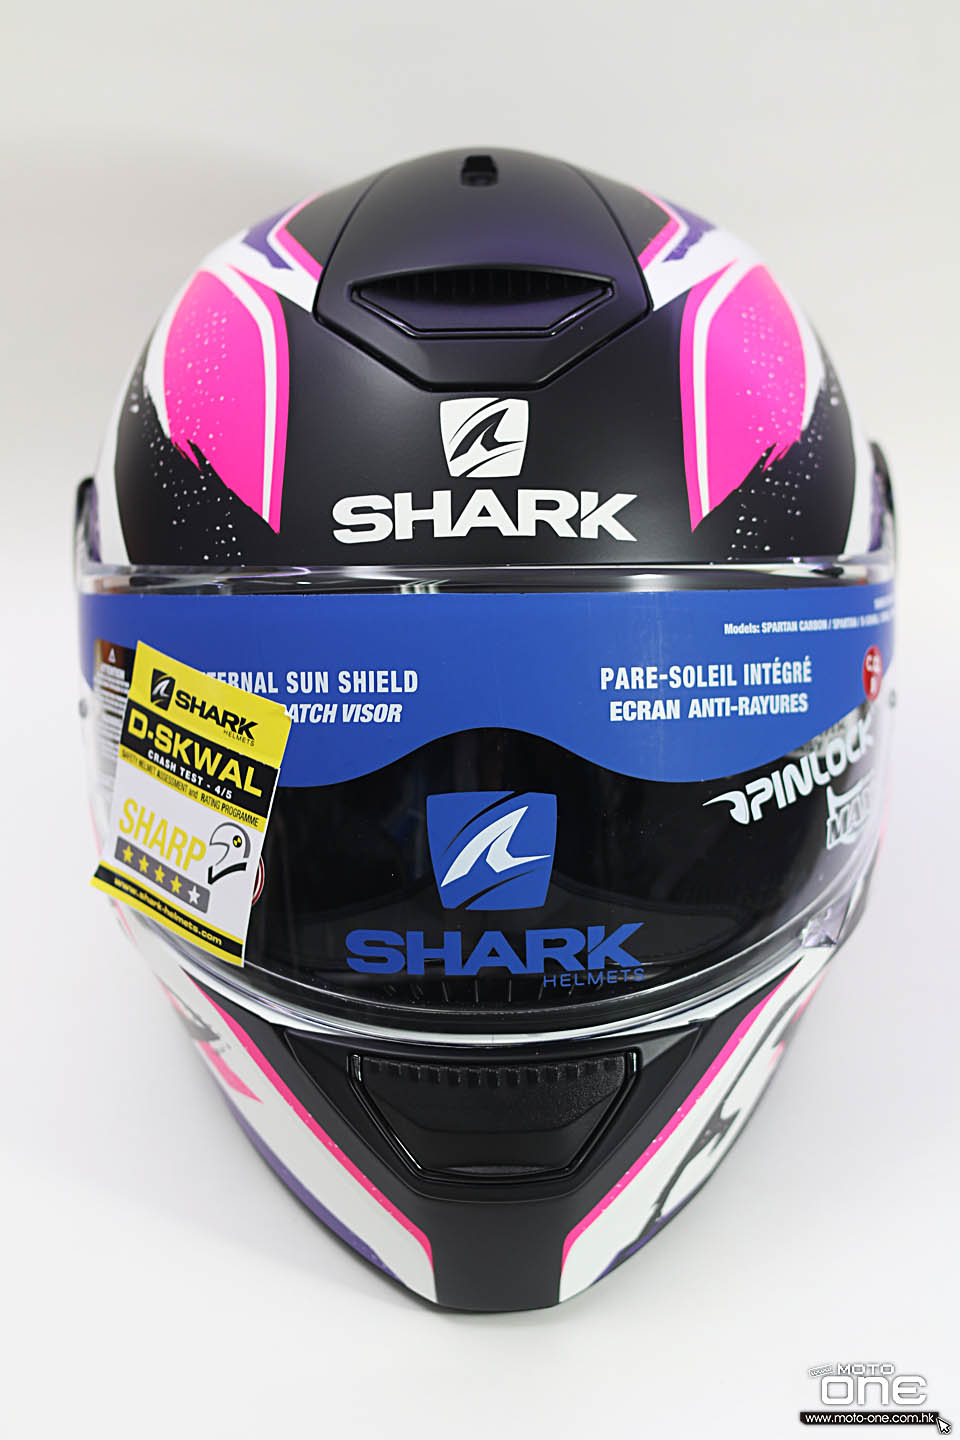 2018 SHARK D-SKWAL RIDILL helmets